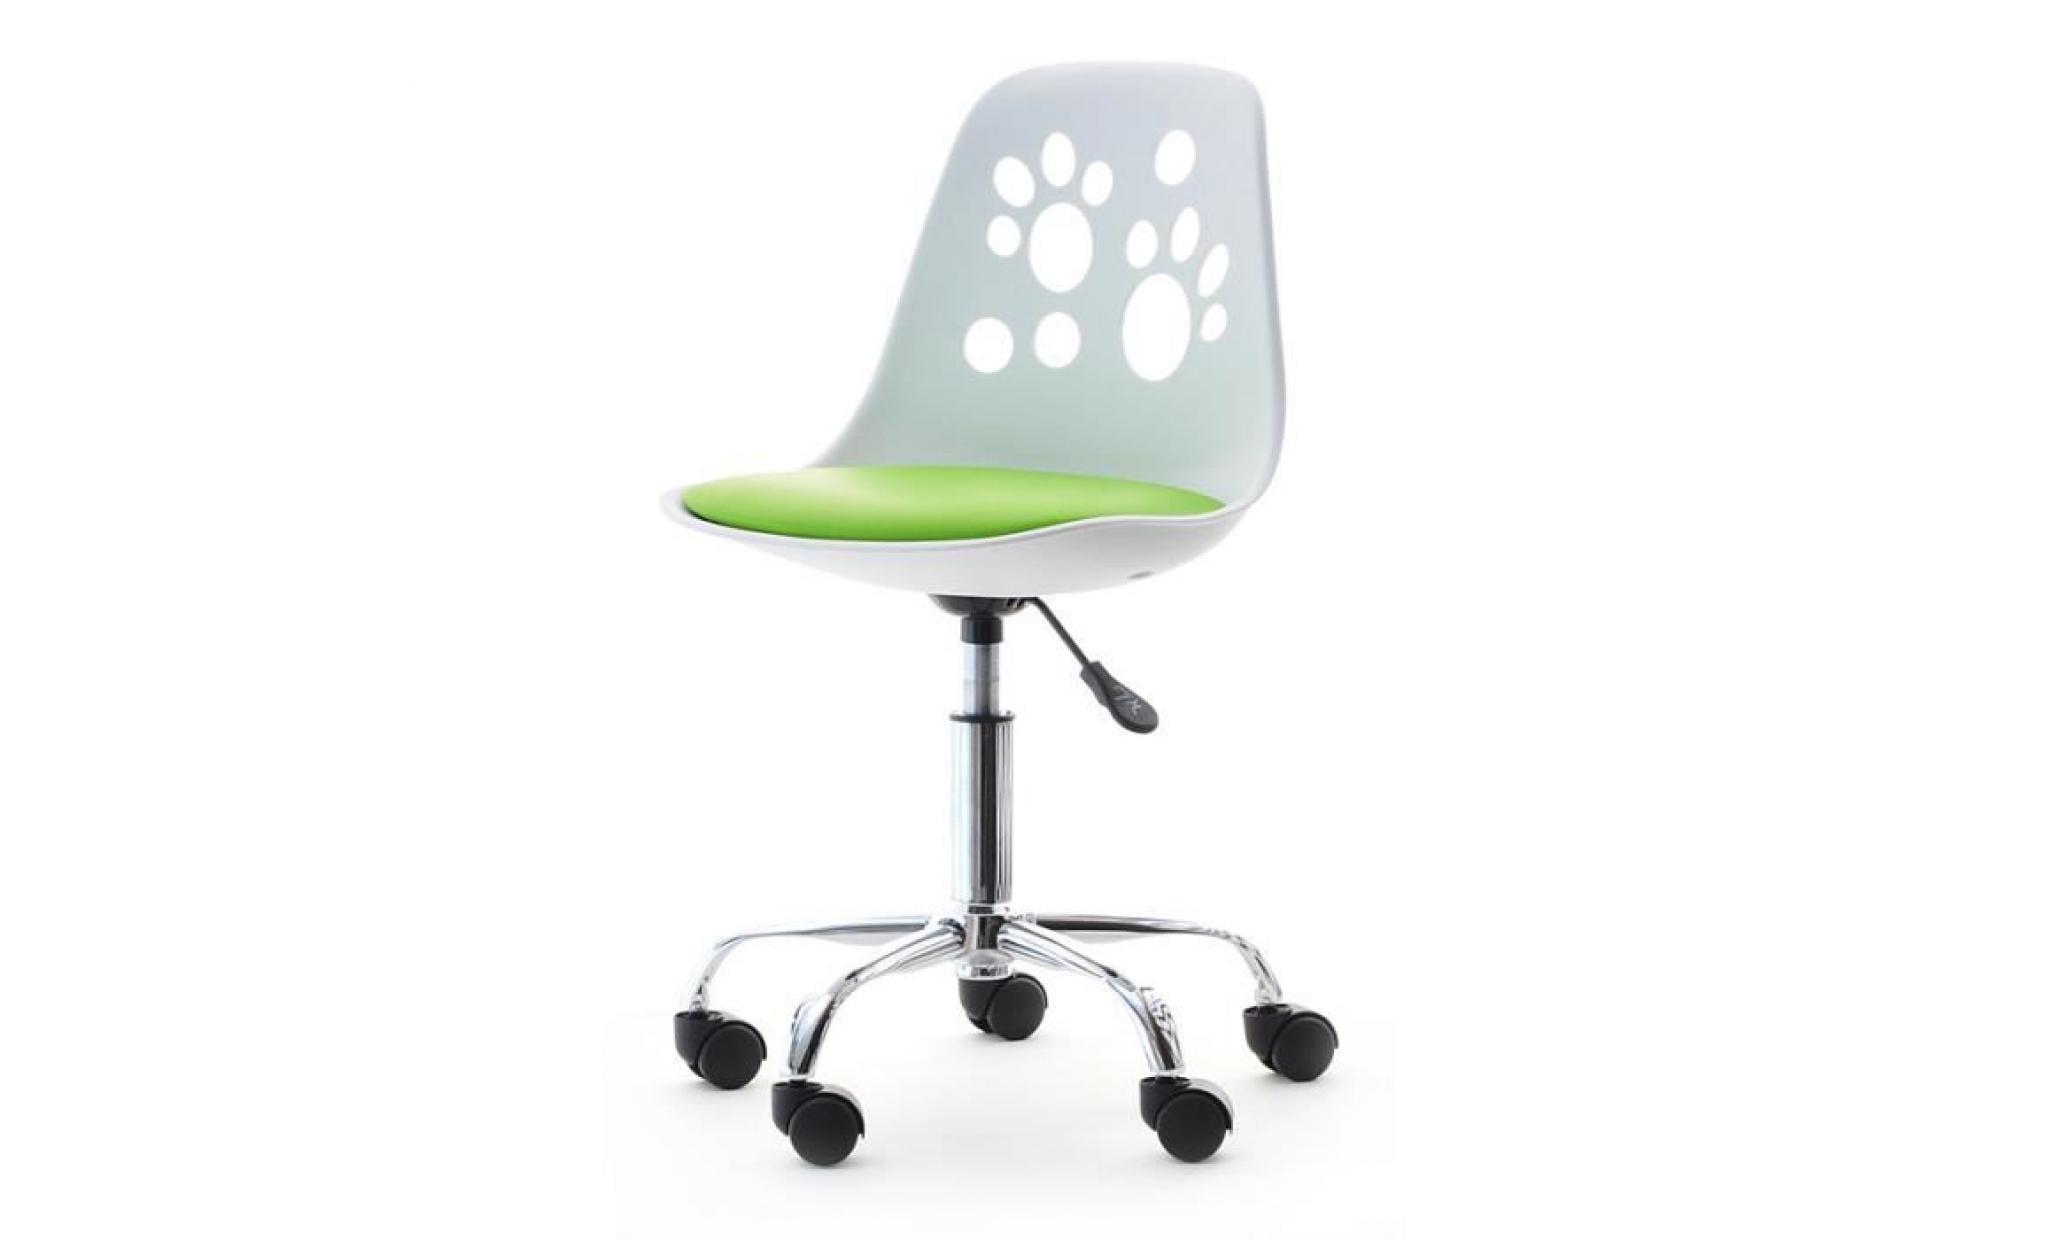 fauteuil d'enfant / chaise de bureau   foot   40 cm   blanc / violet   design moderne   réglable   pivotant pas cher